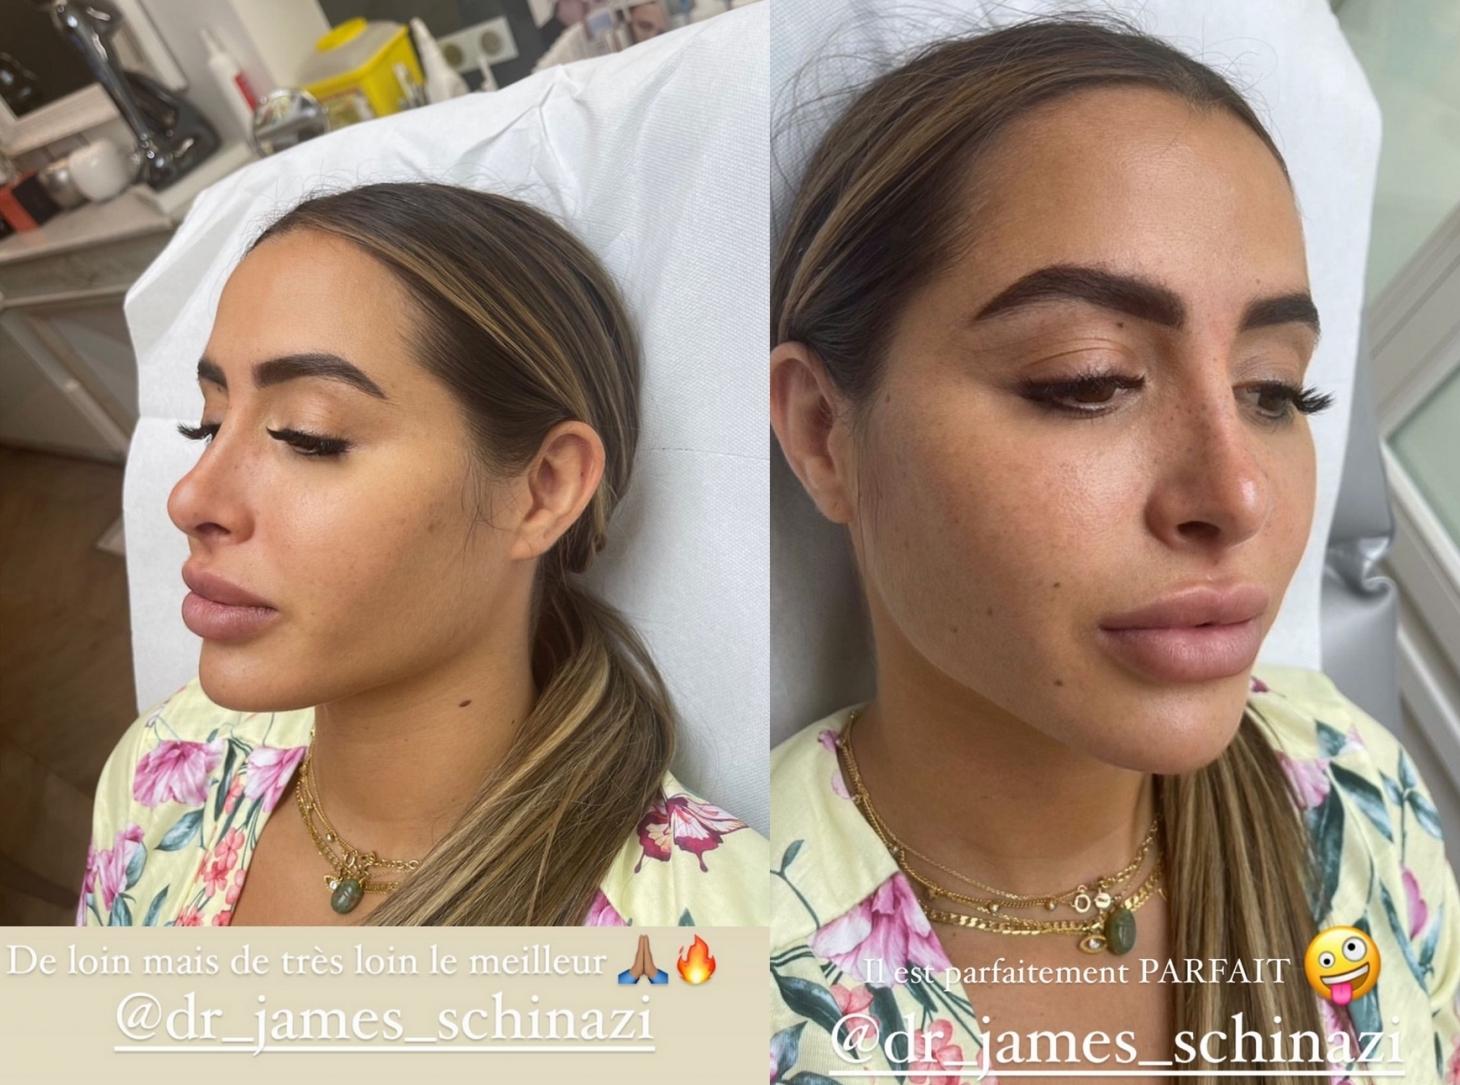  Marine El Himer dévoile son nouveau nez @Instagram